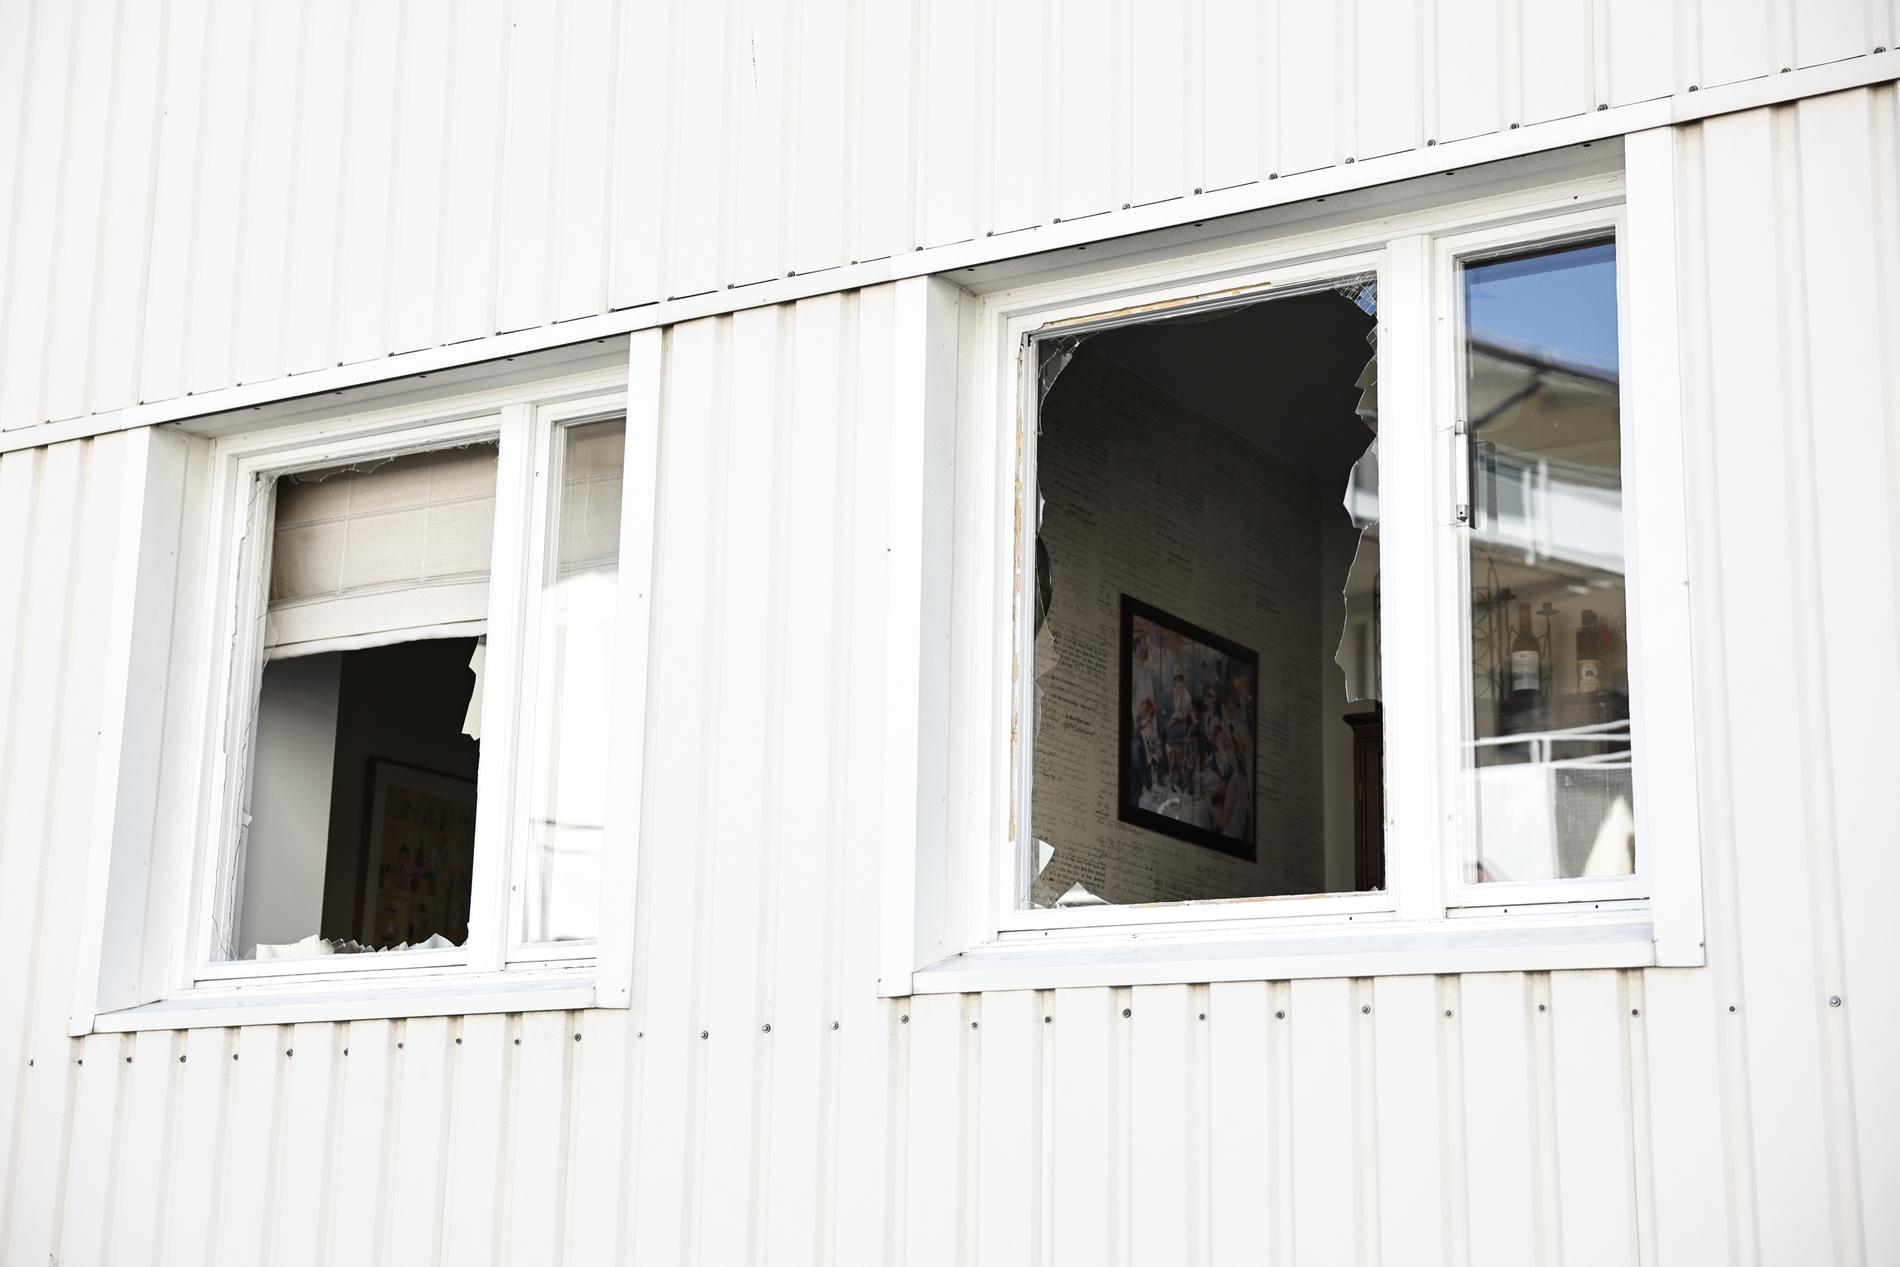 Bostäder som ligger i närheten av den drabbade bostaden har förstörda fönster.